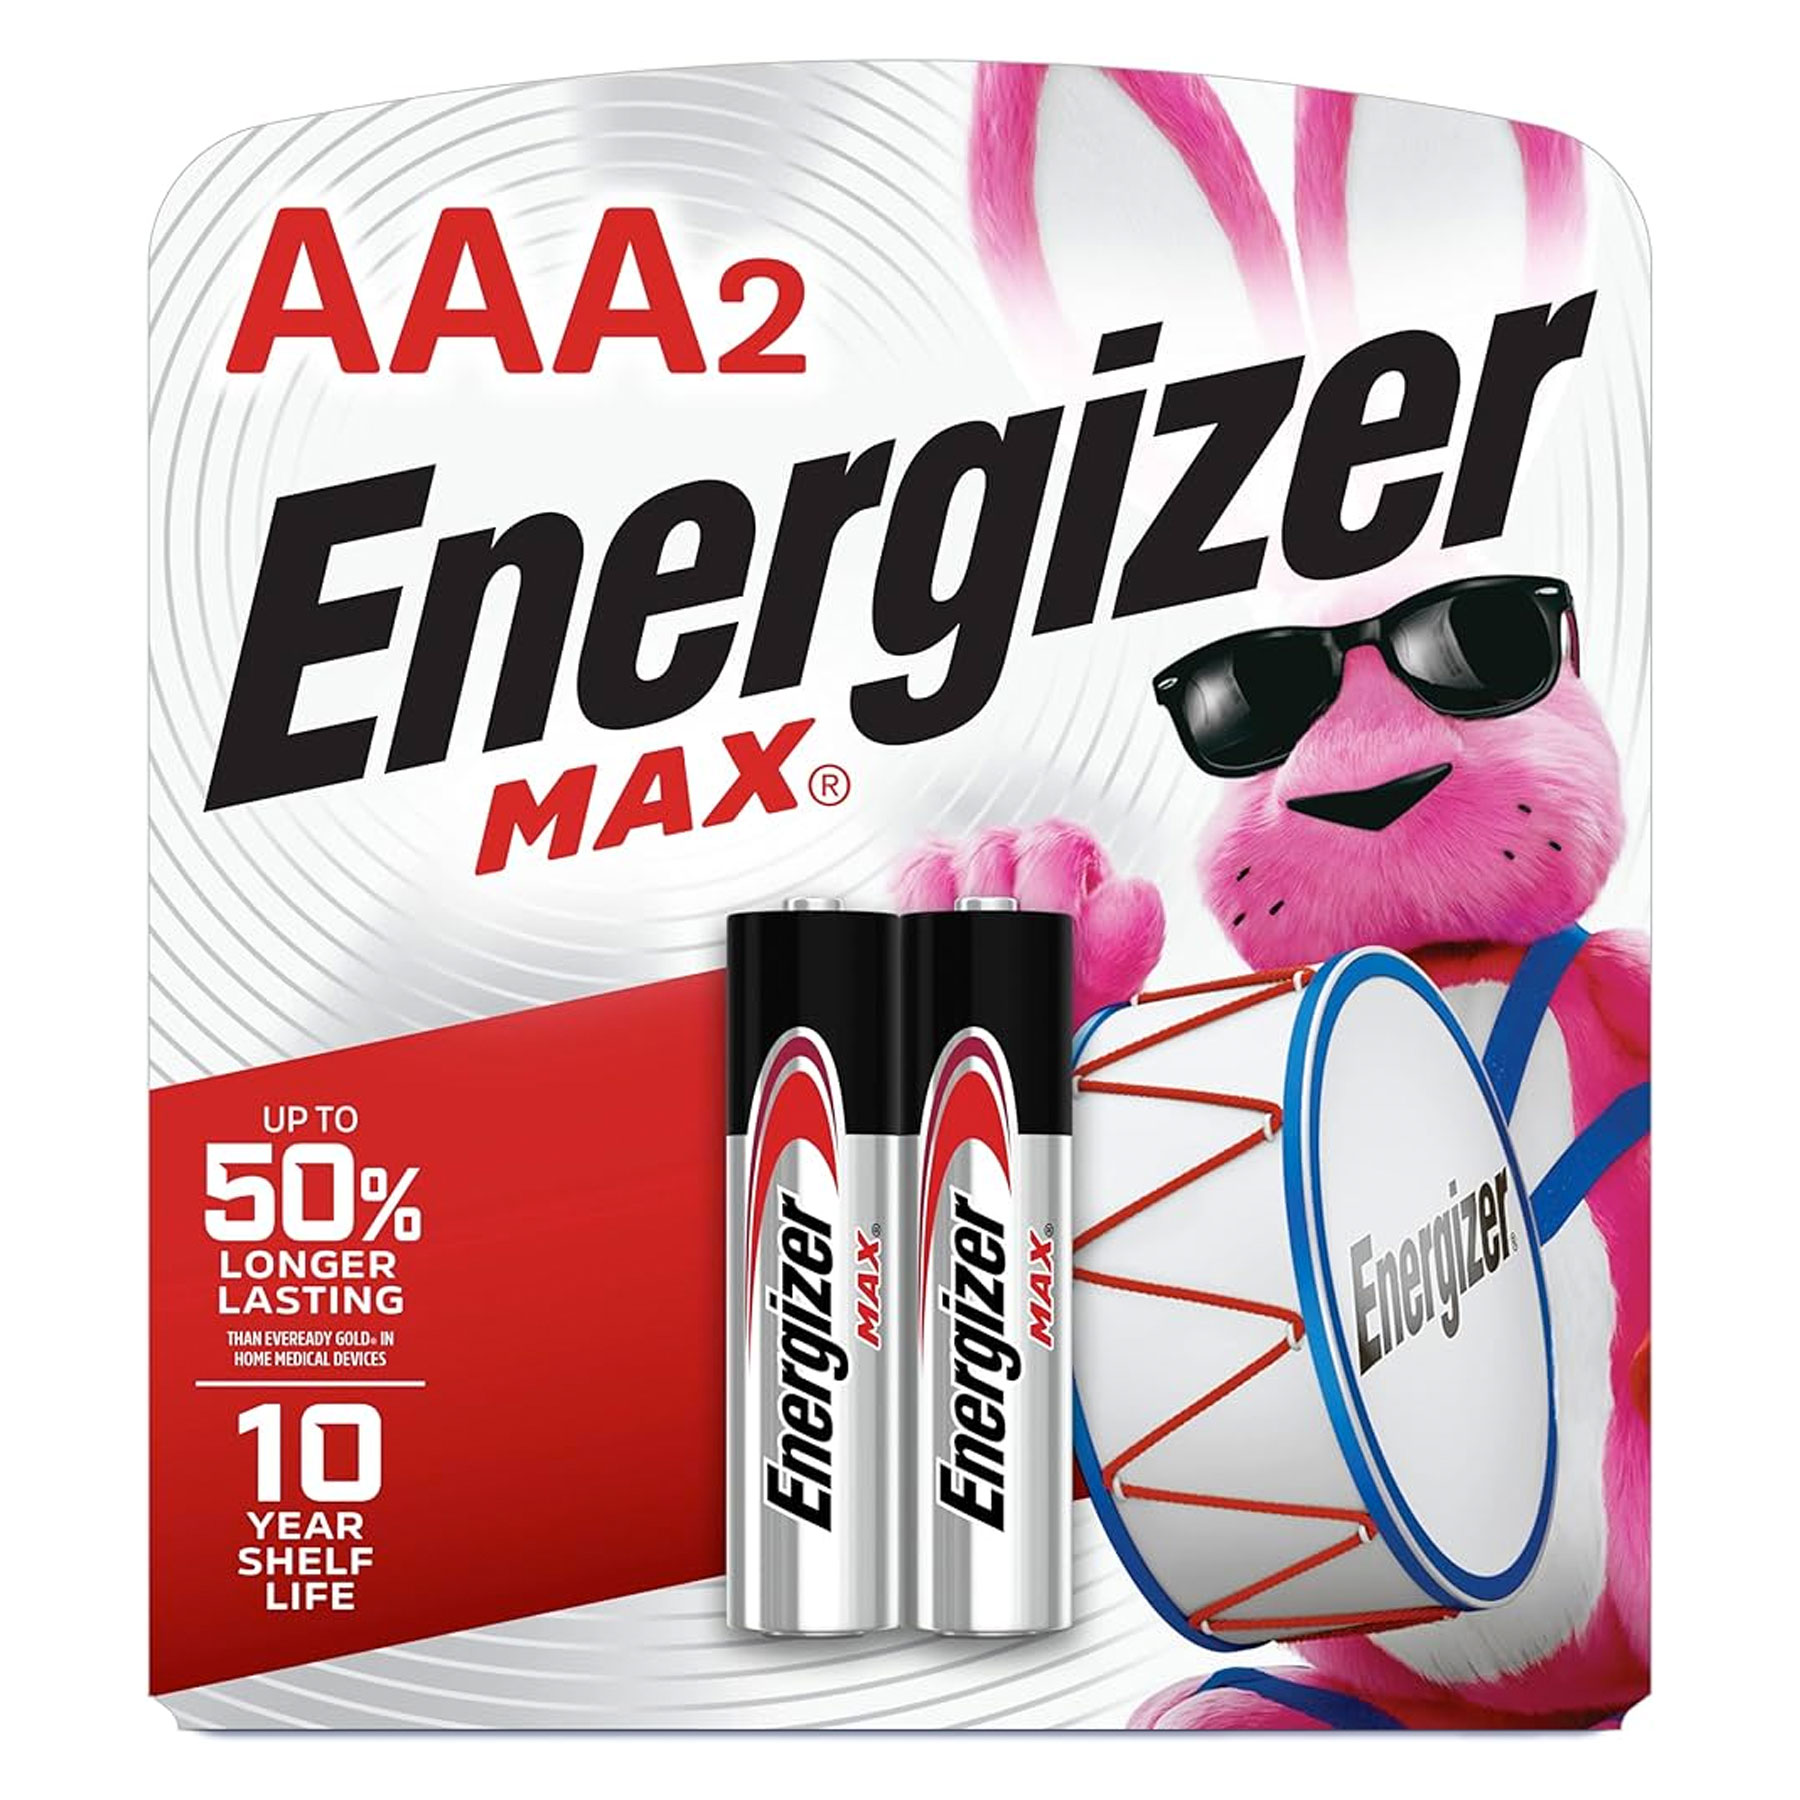 BATTERY ENERGIZER MAX 2-AAA ALKA